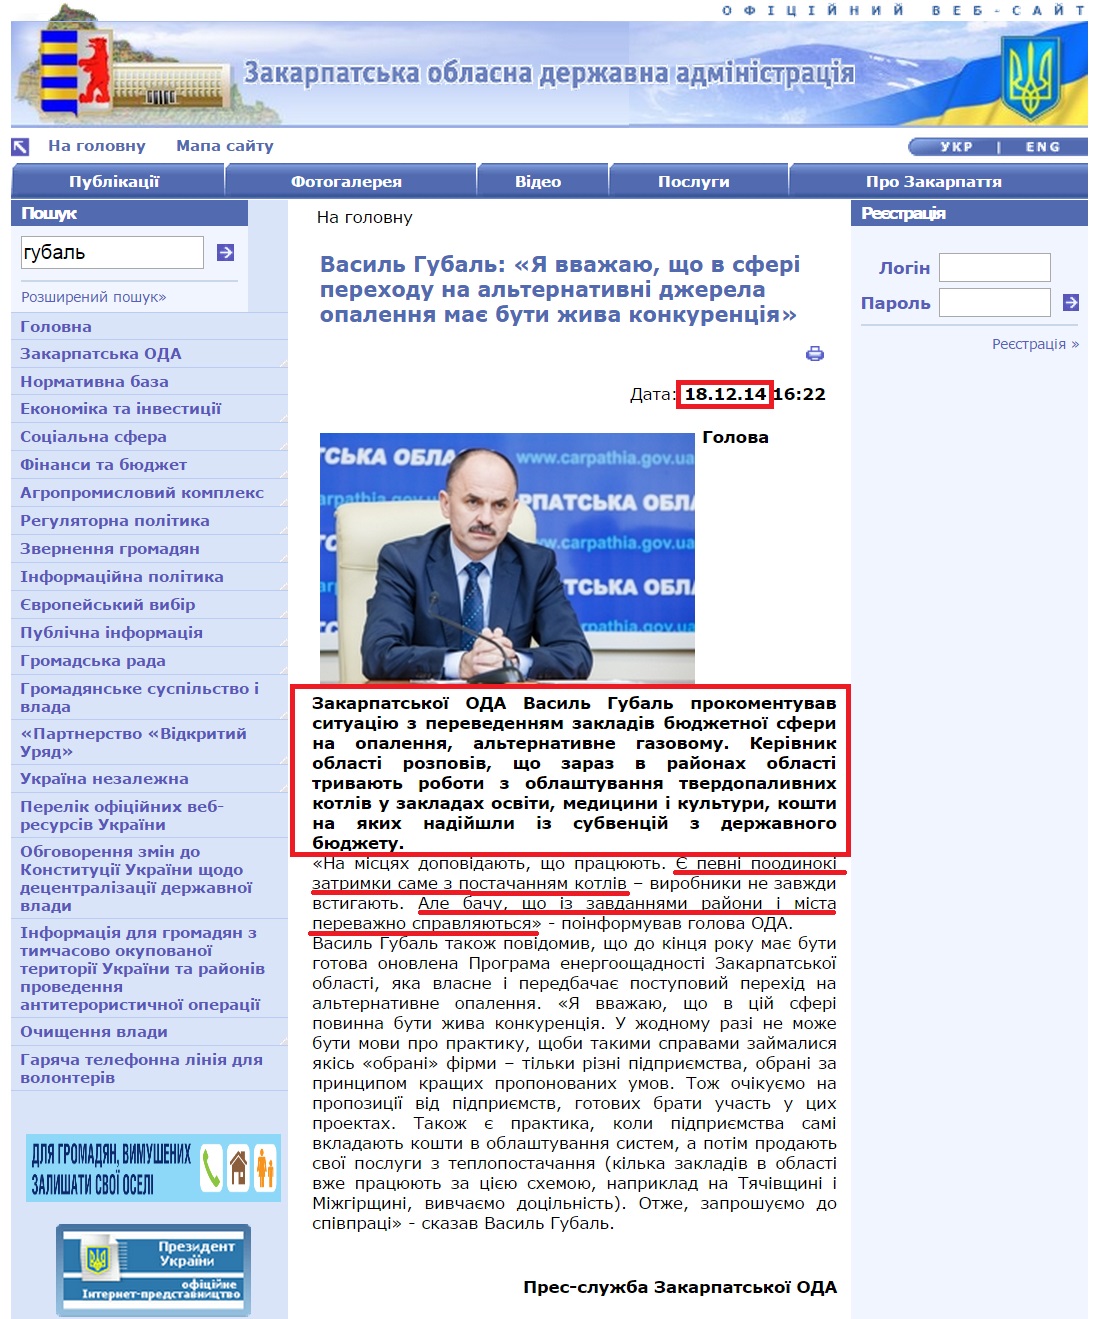 http://www.carpathia.gov.ua/ua/publication/content/10464.htm?lightWords=%D0%B3%D1%83%D0%B1%D0%B0%D0%BB%D1%8C